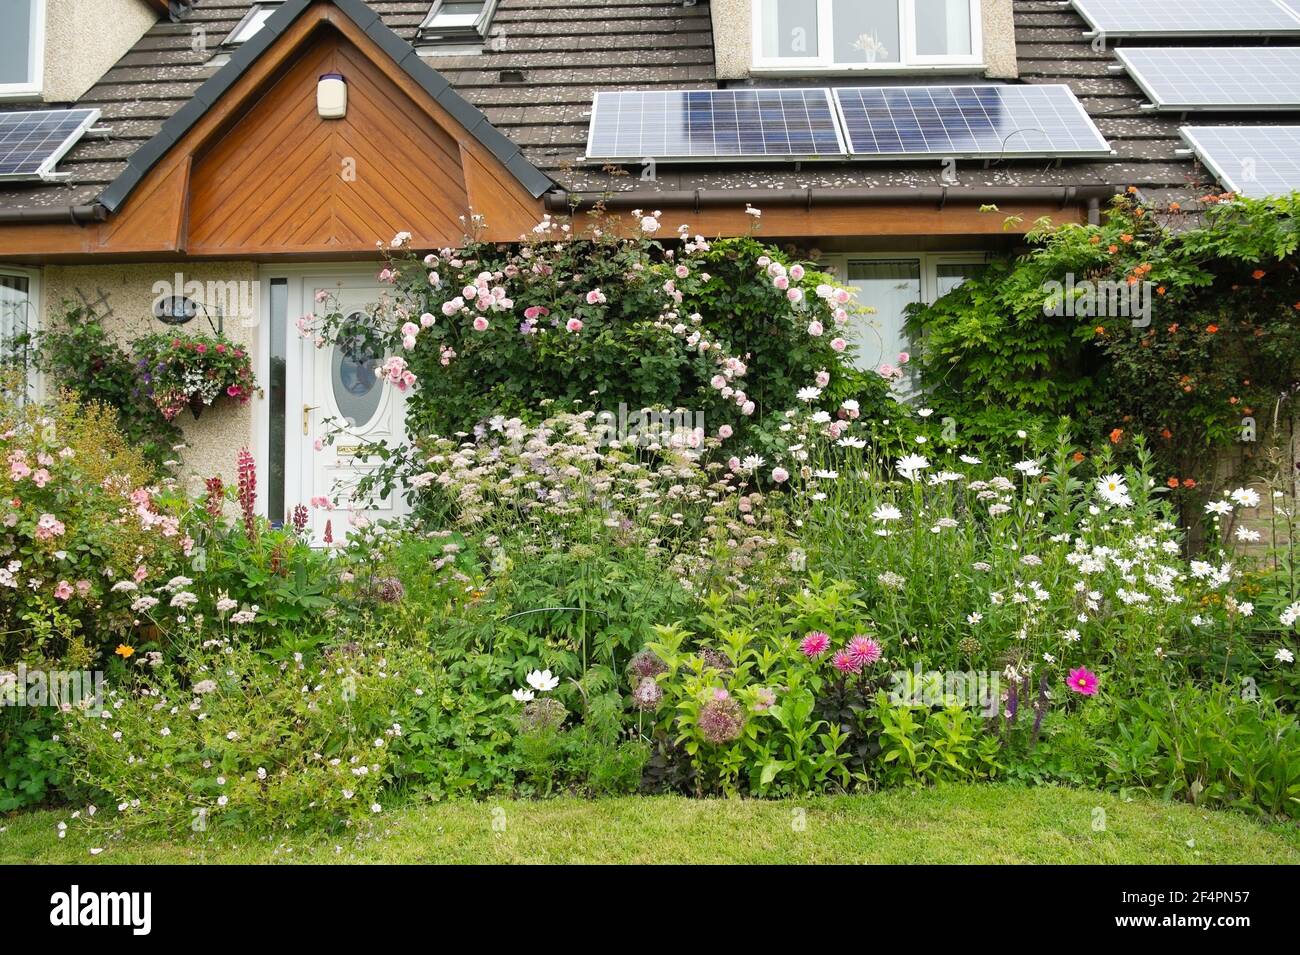 Un colorido jardín privado de casas rurales en el Reino Unido en verano con bordes desbordantes de color y paneles solares en el techo. Foto de stock